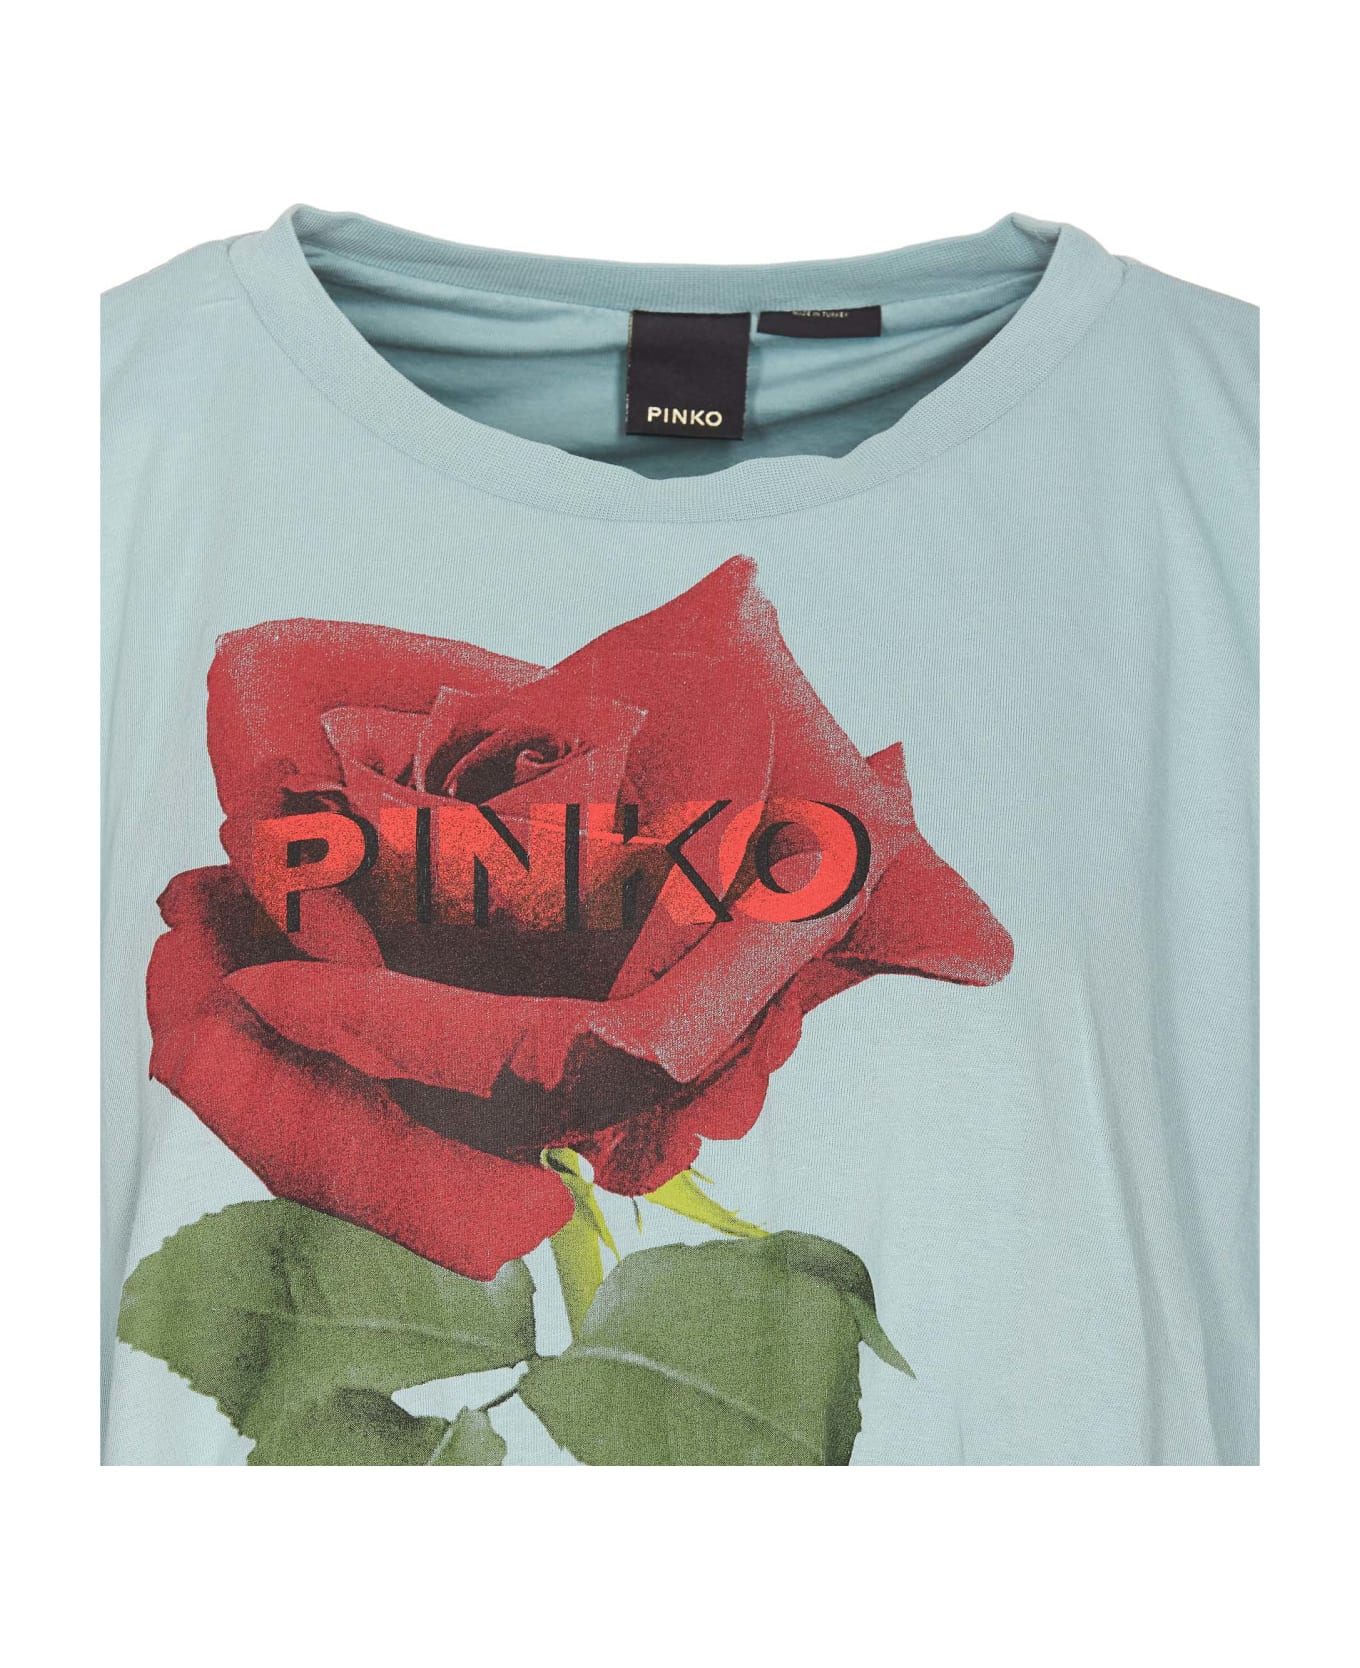 Pinko Torrone T-shirt - Green